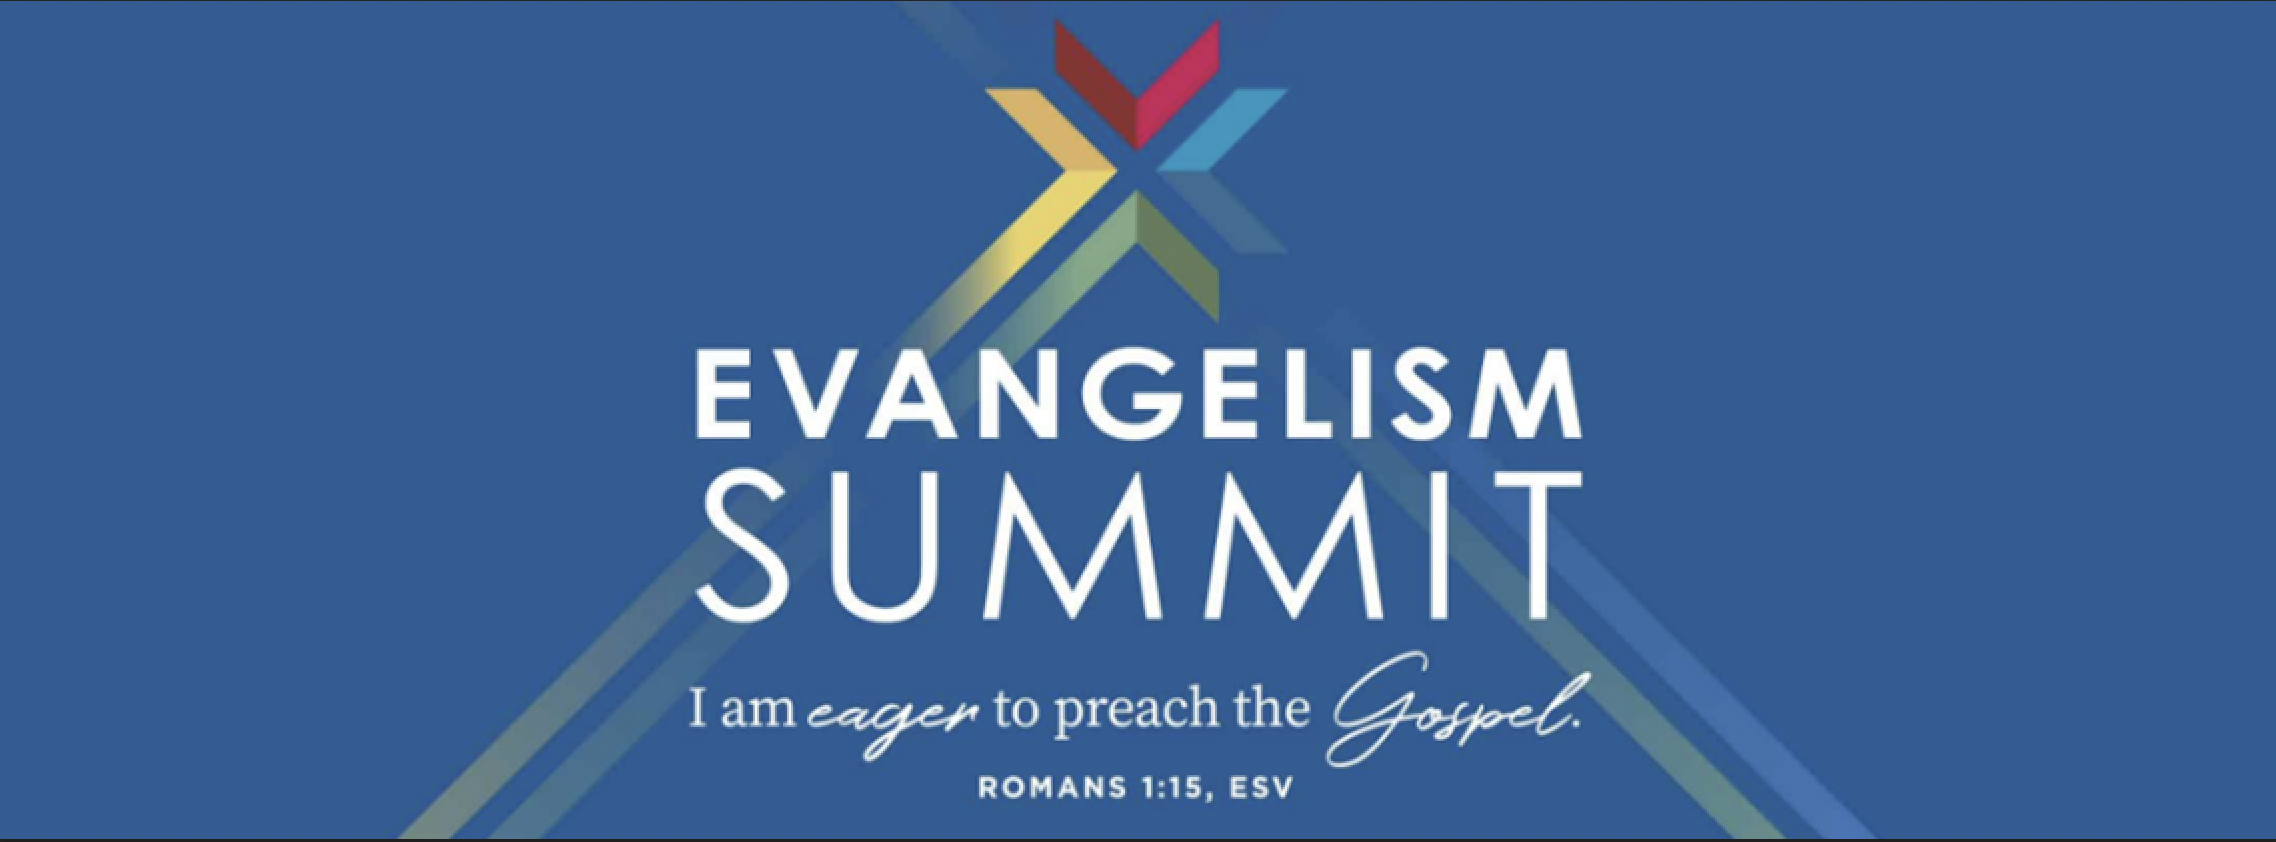 Evangelism Summit